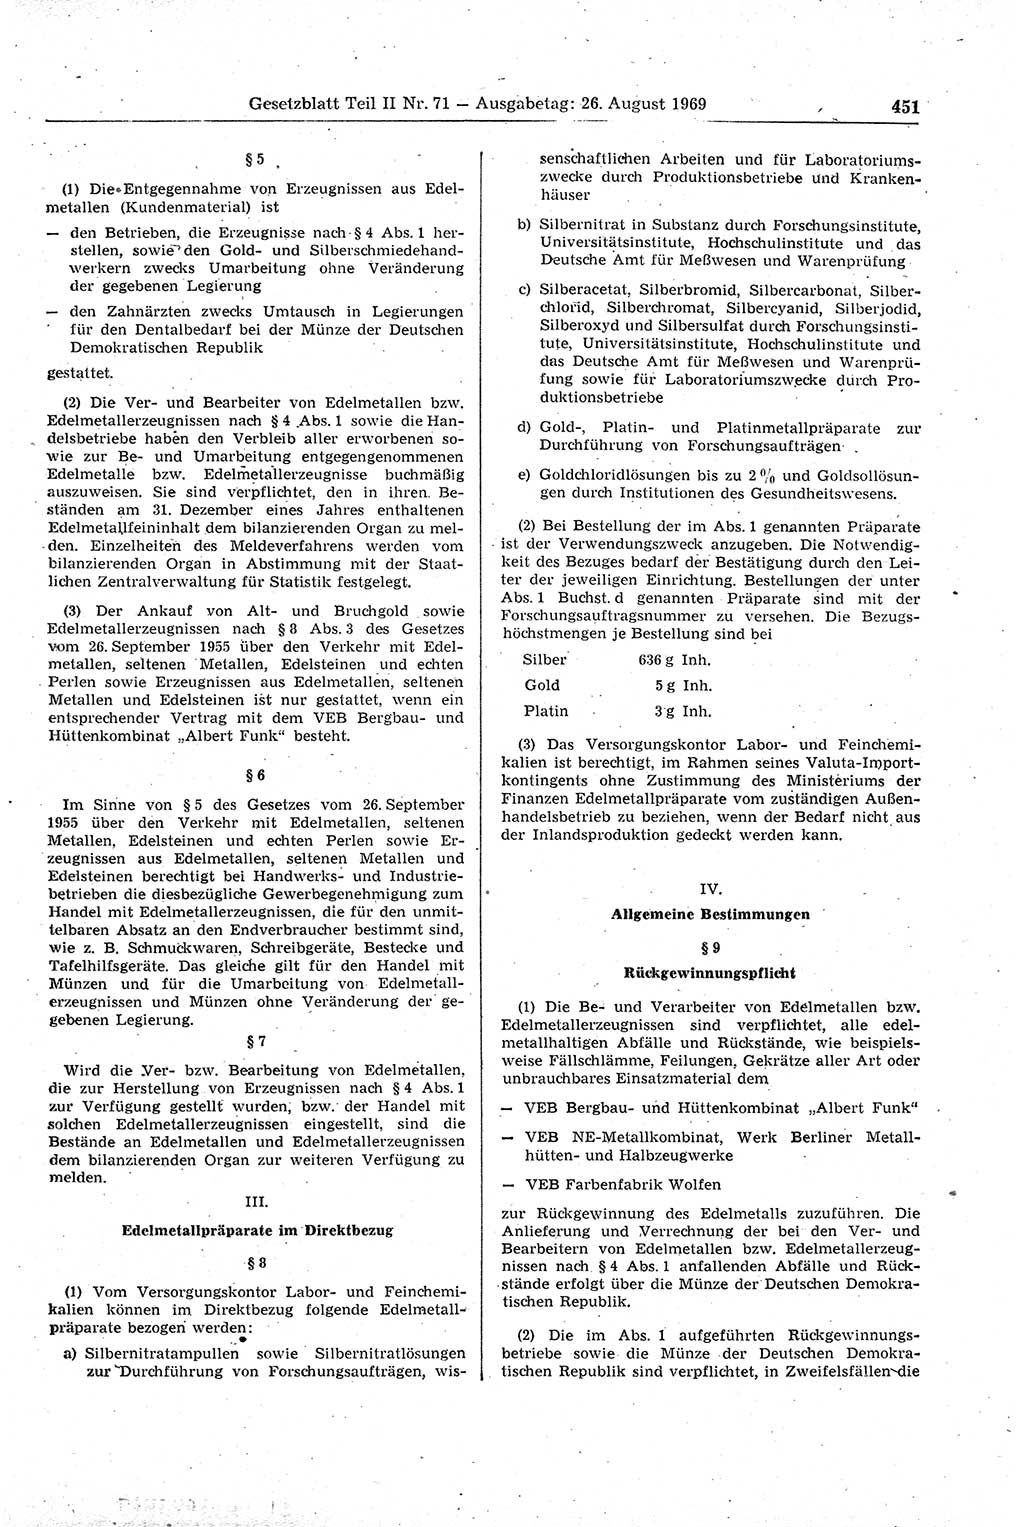 Gesetzblatt (GBl.) der Deutschen Demokratischen Republik (DDR) Teil ⅠⅠ 1969, Seite 451 (GBl. DDR ⅠⅠ 1969, S. 451)